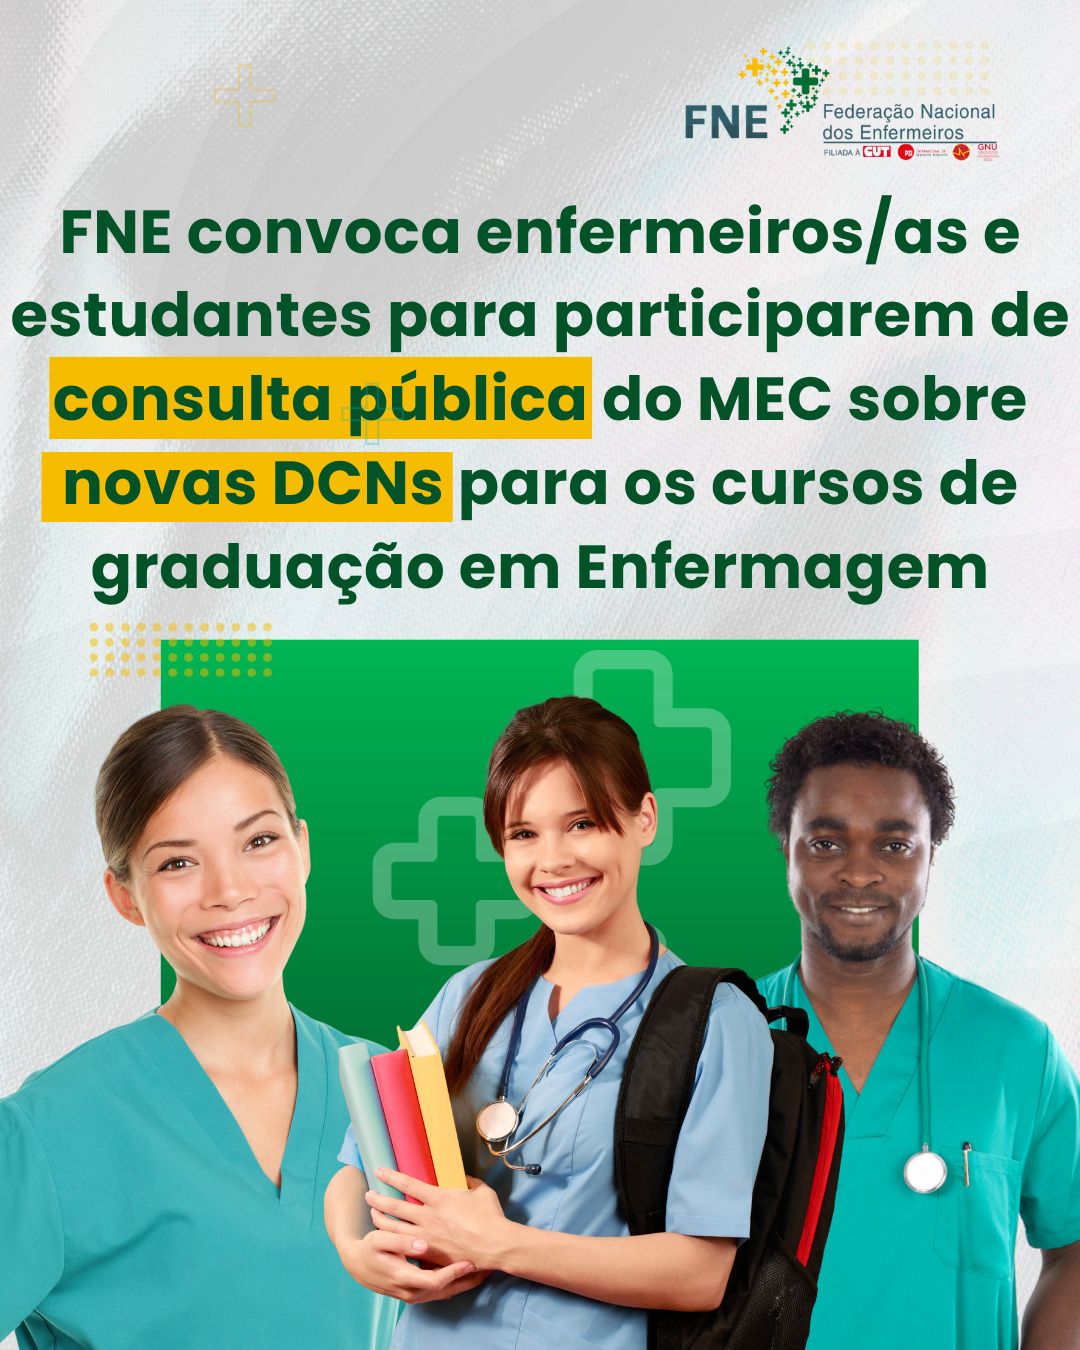 FNE convoca enfermeiros/as e estudantes para participarem de consulta pública do MEC sobre novas DCNs para os cursos de graduação em Enfermagem